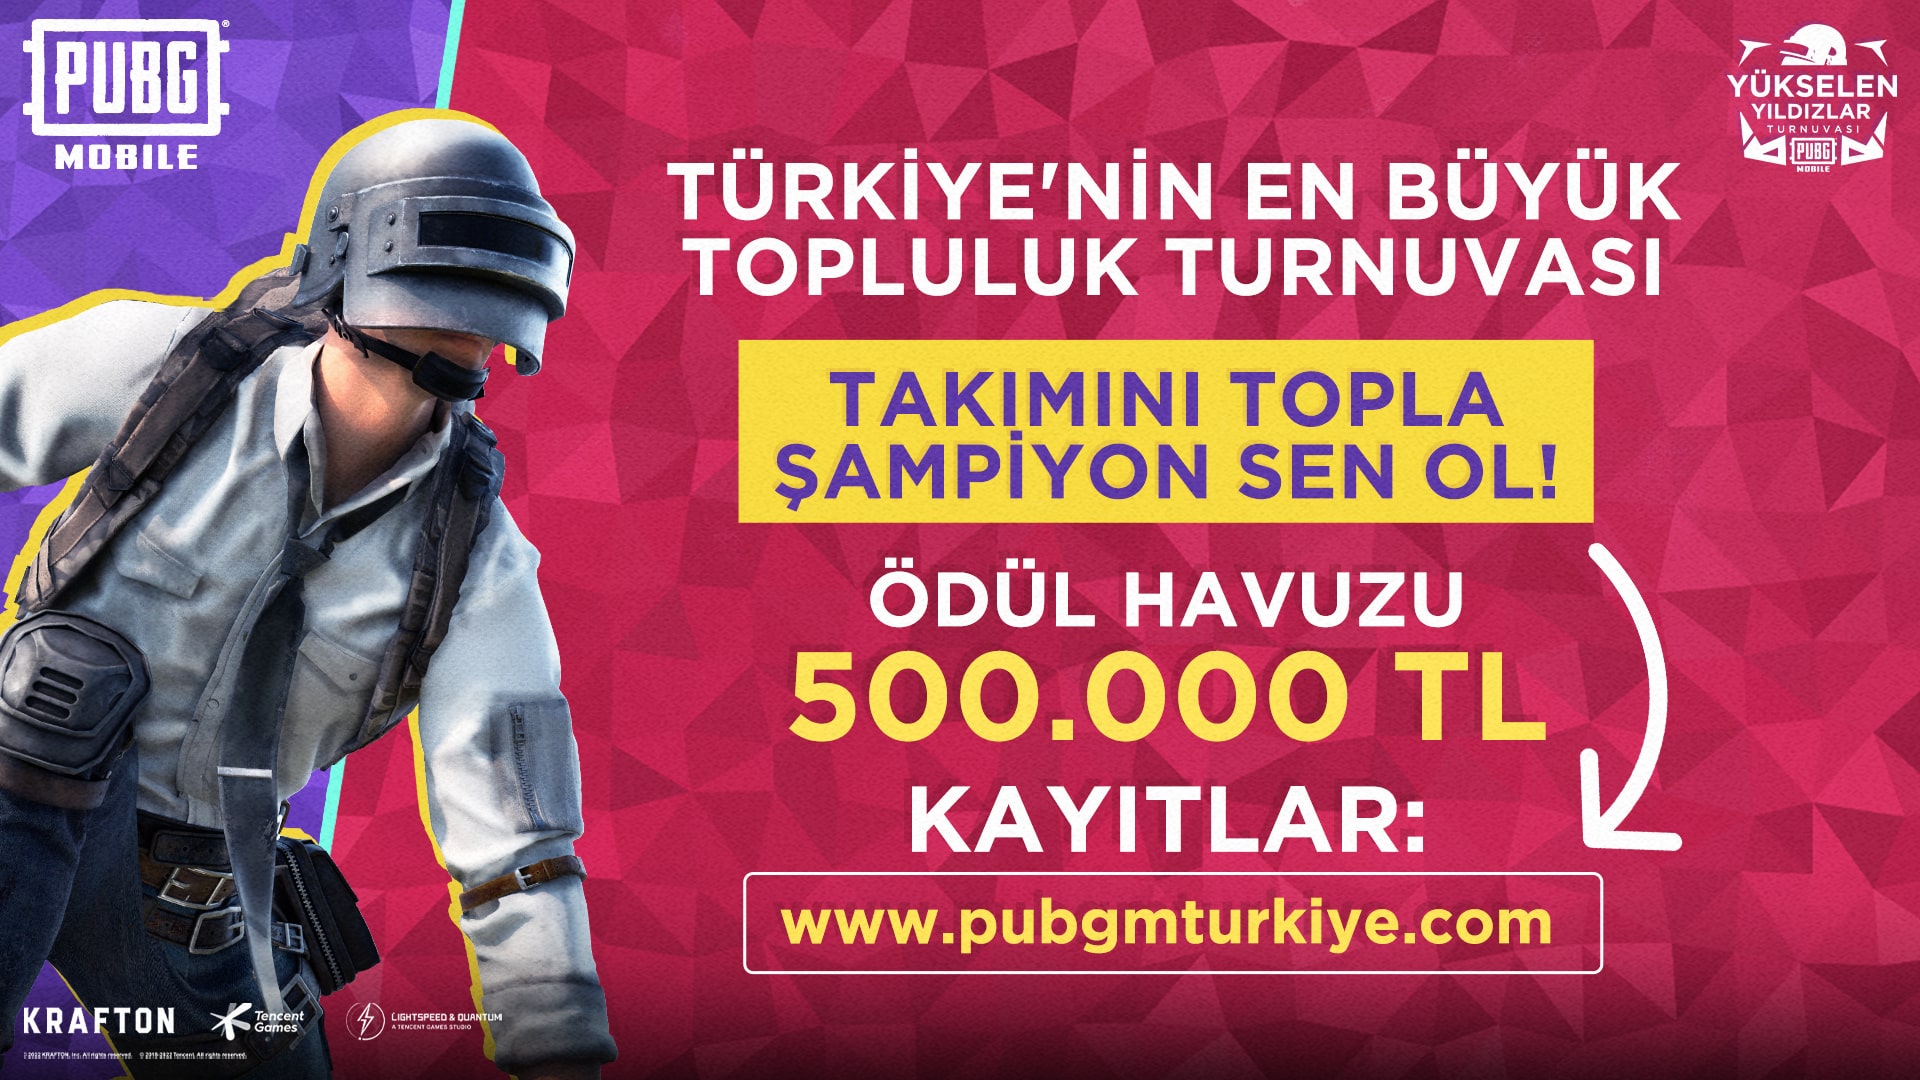 PUBG MOBILE, Türkiye esportimes